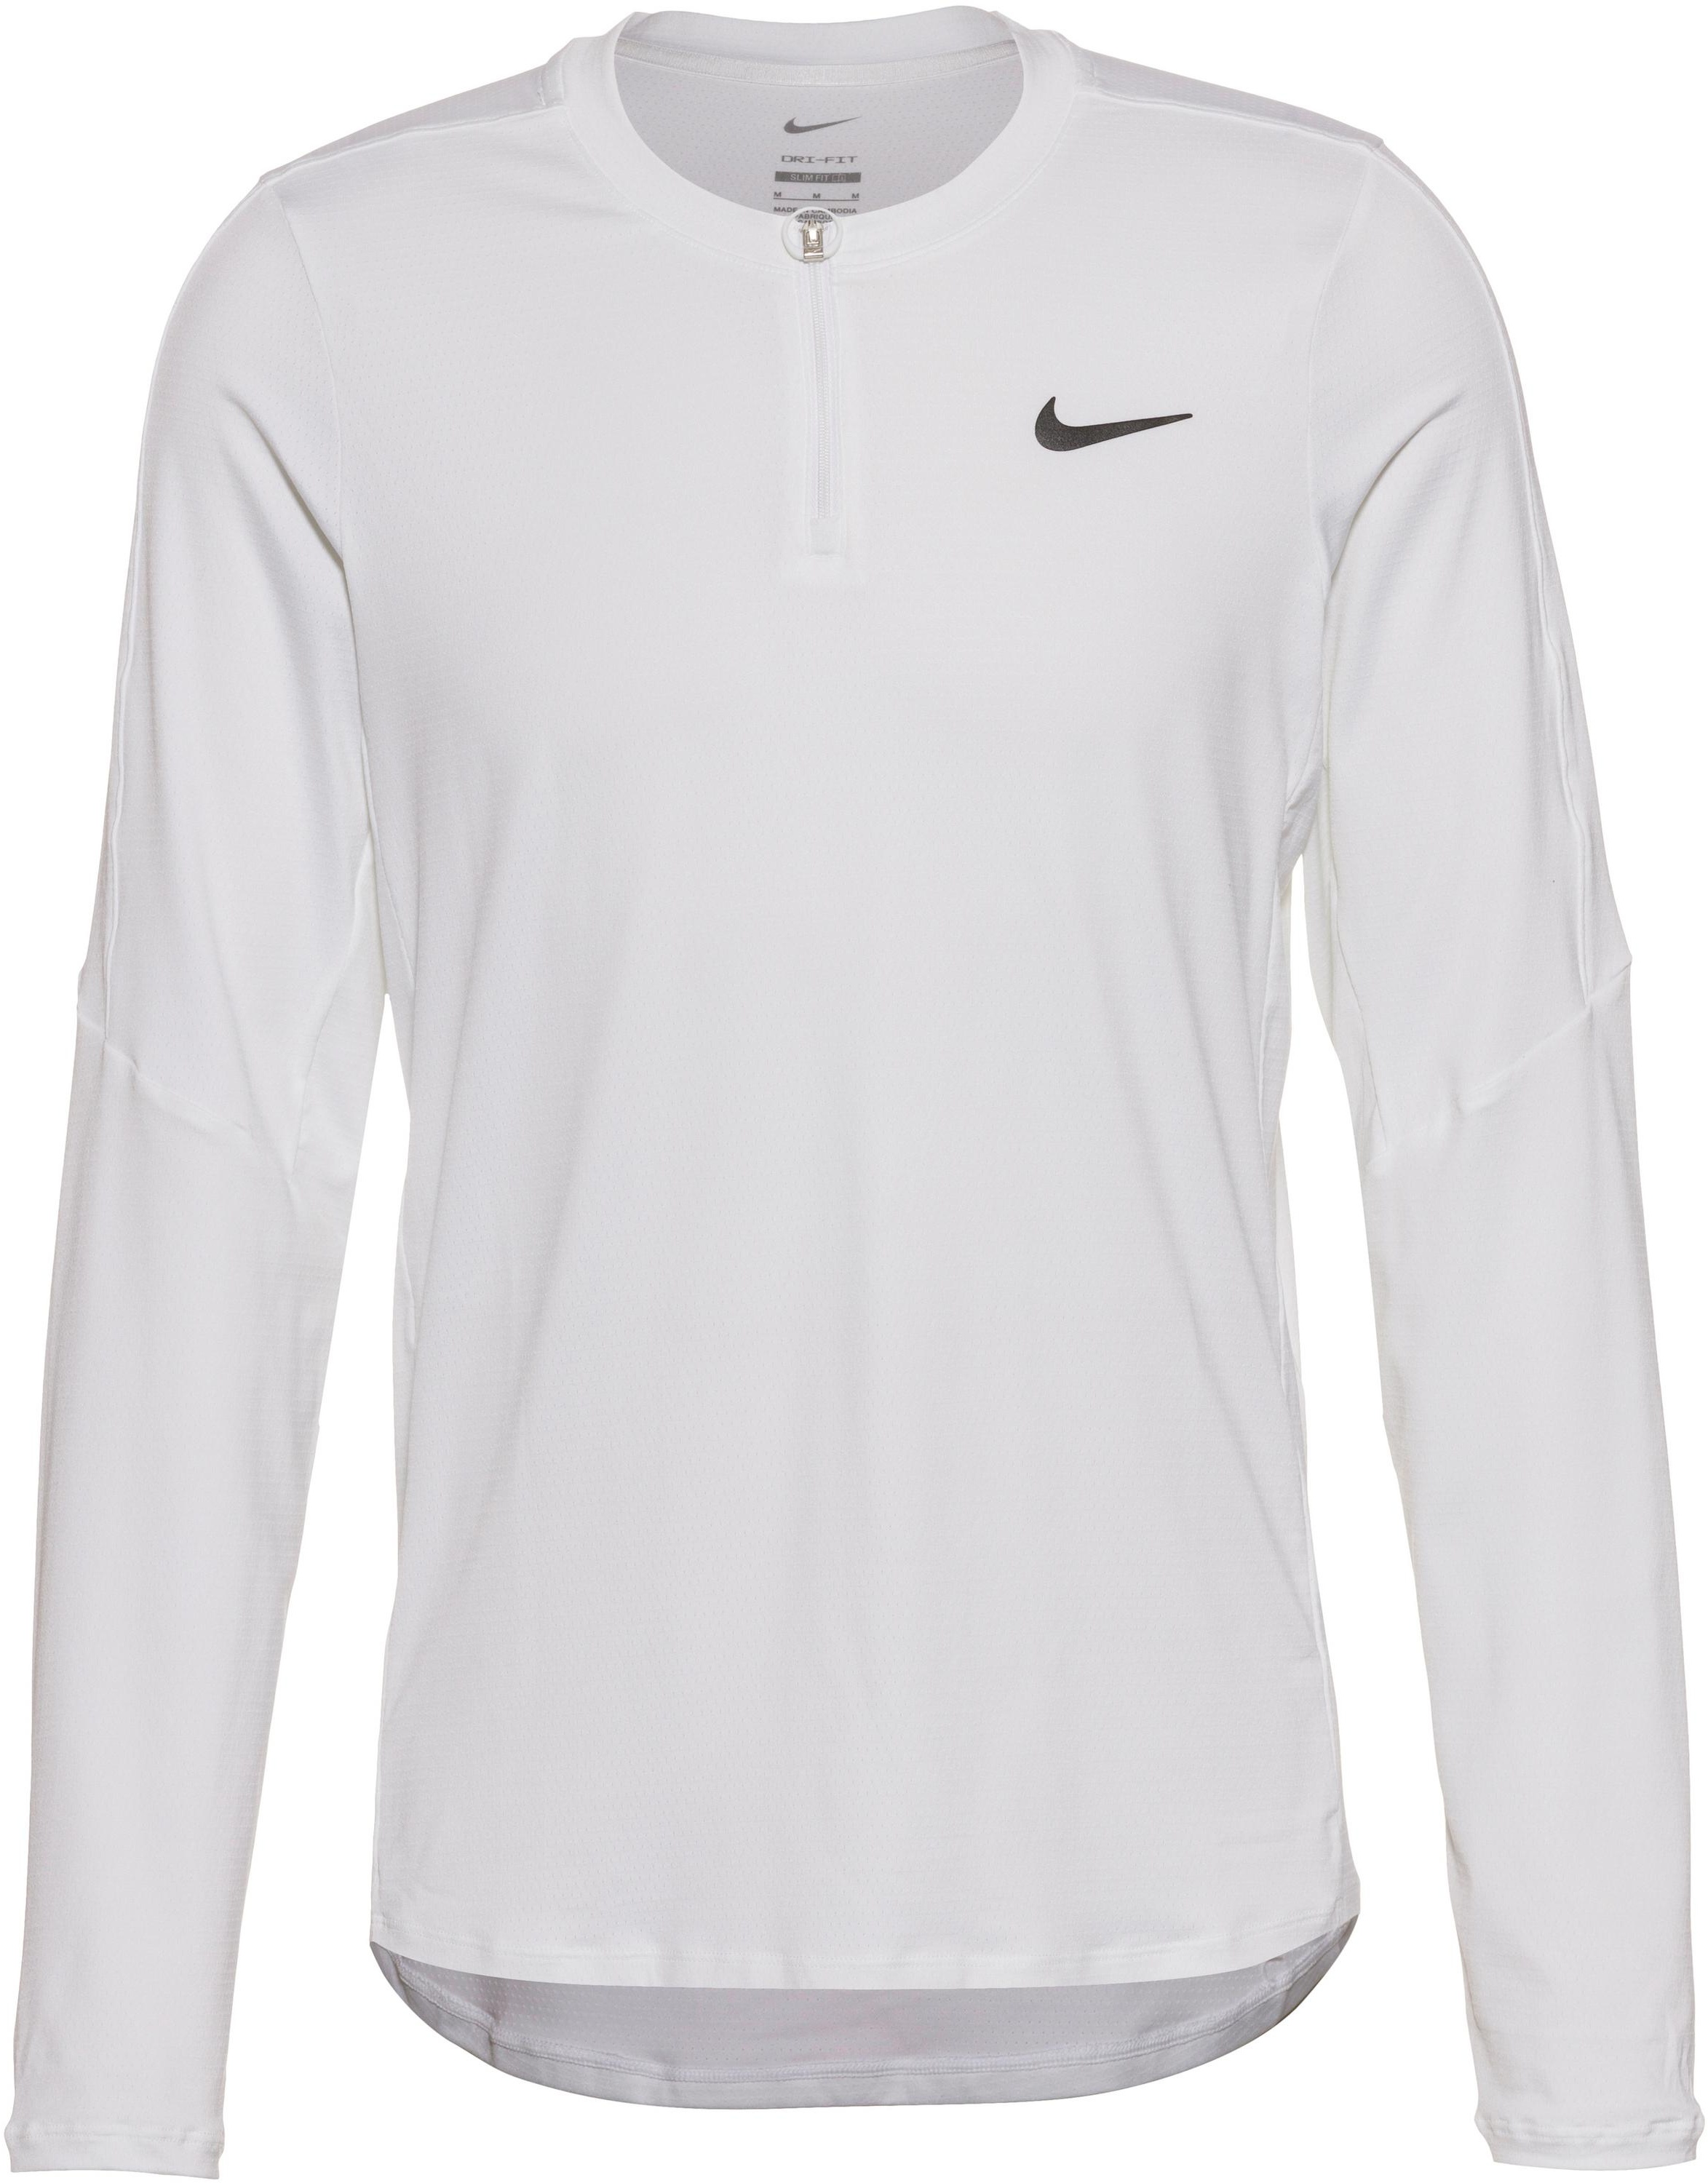 Nike COURT ADVANTAGE Tennisshirt Herren in white-white-black, Größe L - weiß